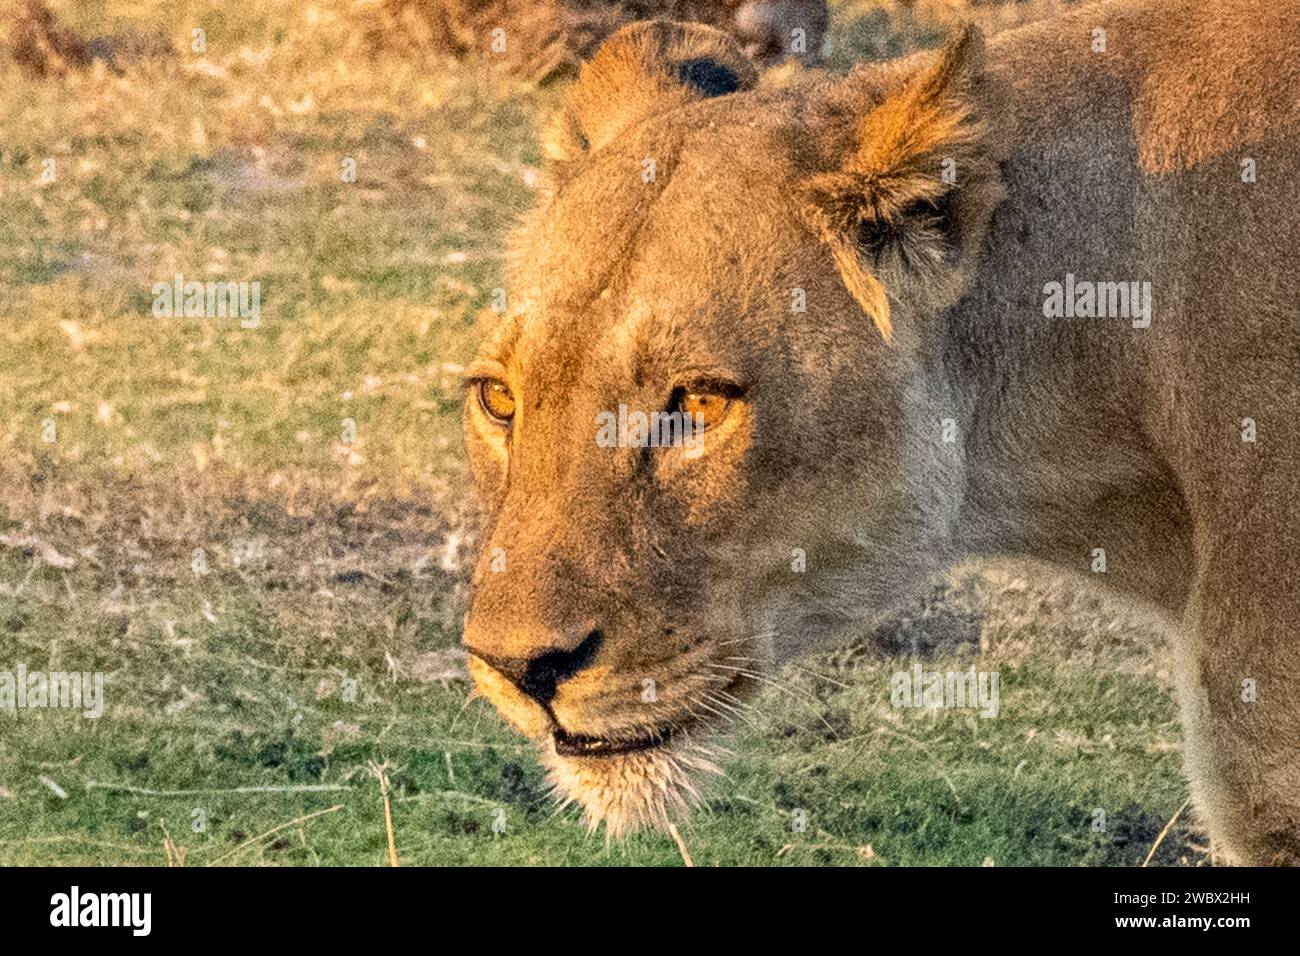 Un lion majestueux se dresse fièrement dans les hautes herbes, son regard féroce dirigé vers l’horizon Banque D'Images